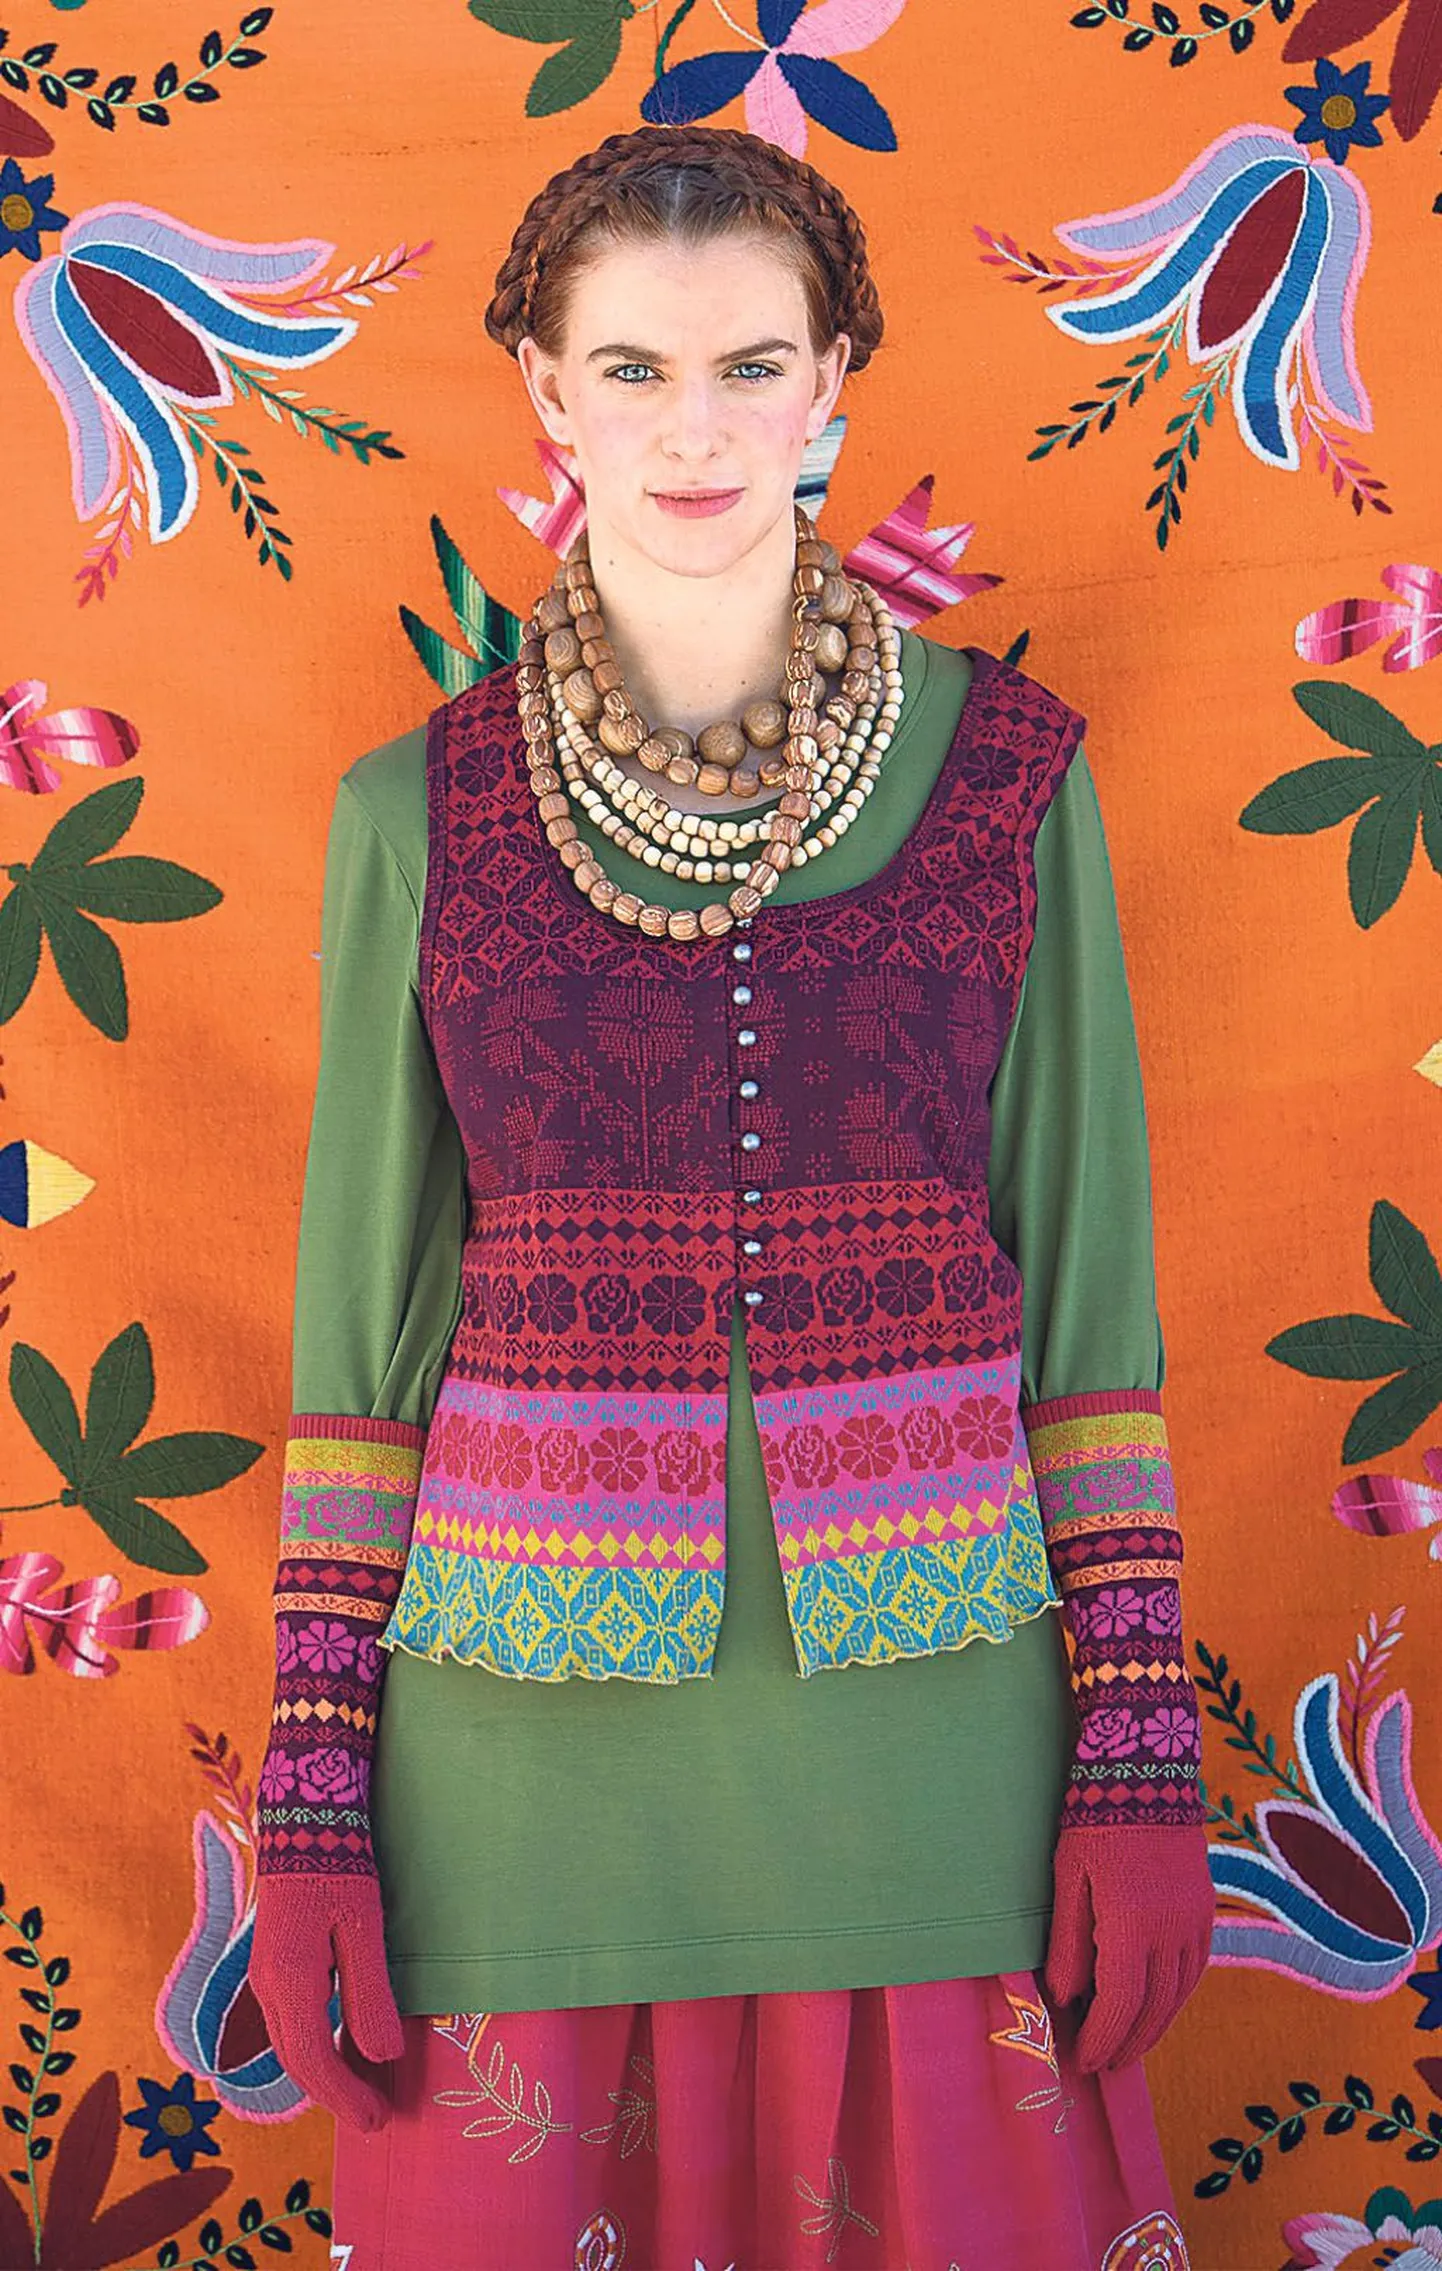 Rootsi tekstiilikunstnik Gudrun Sjödén leidis innustust Muhu-ainelistest mustritest.